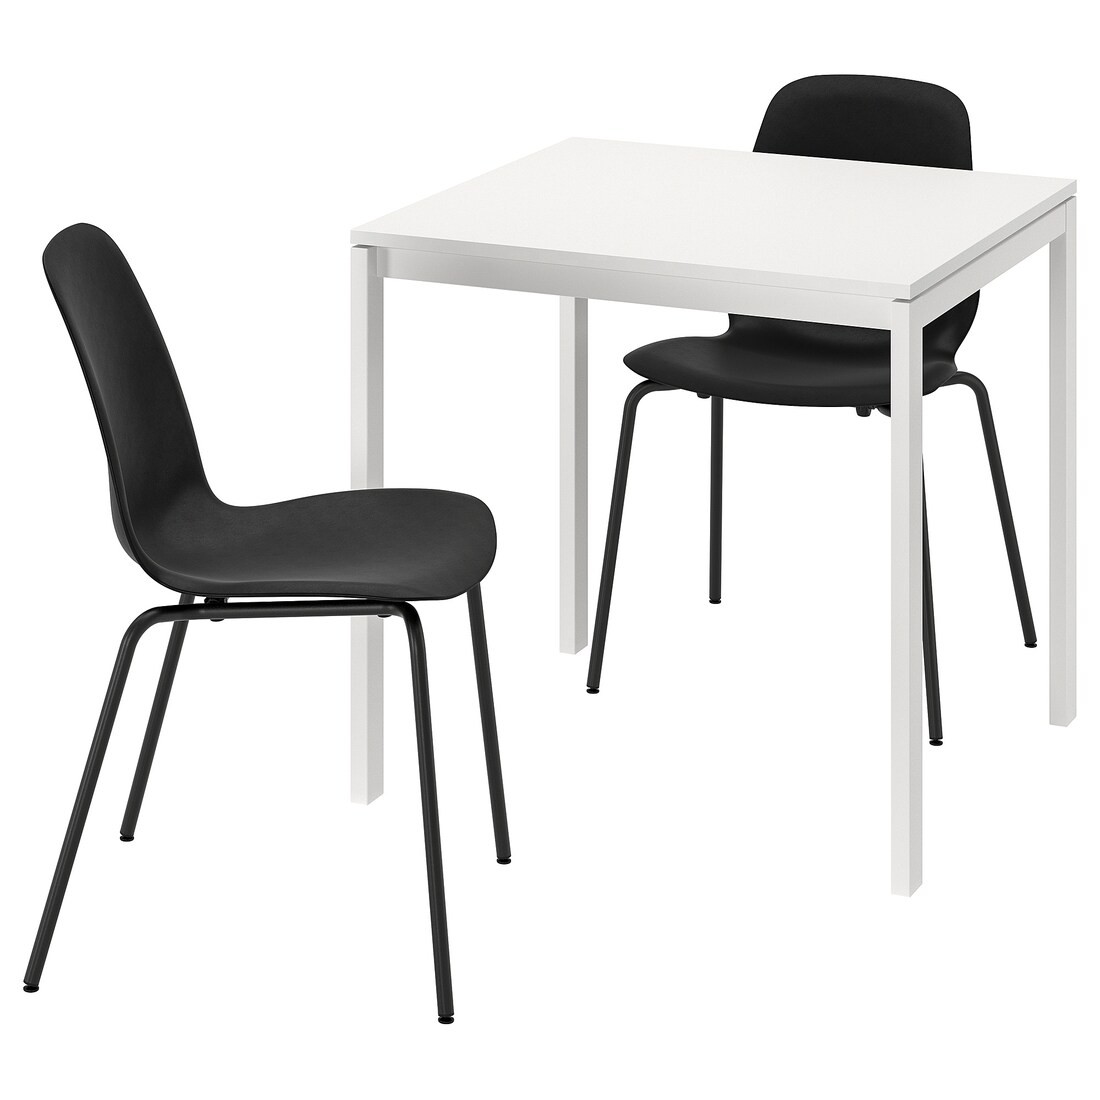 МЕЛЬТОРП MELLTORP / LIDÅS ЛІДАС Стол и 2 стула, белый белый / черный черный, 75x75 см